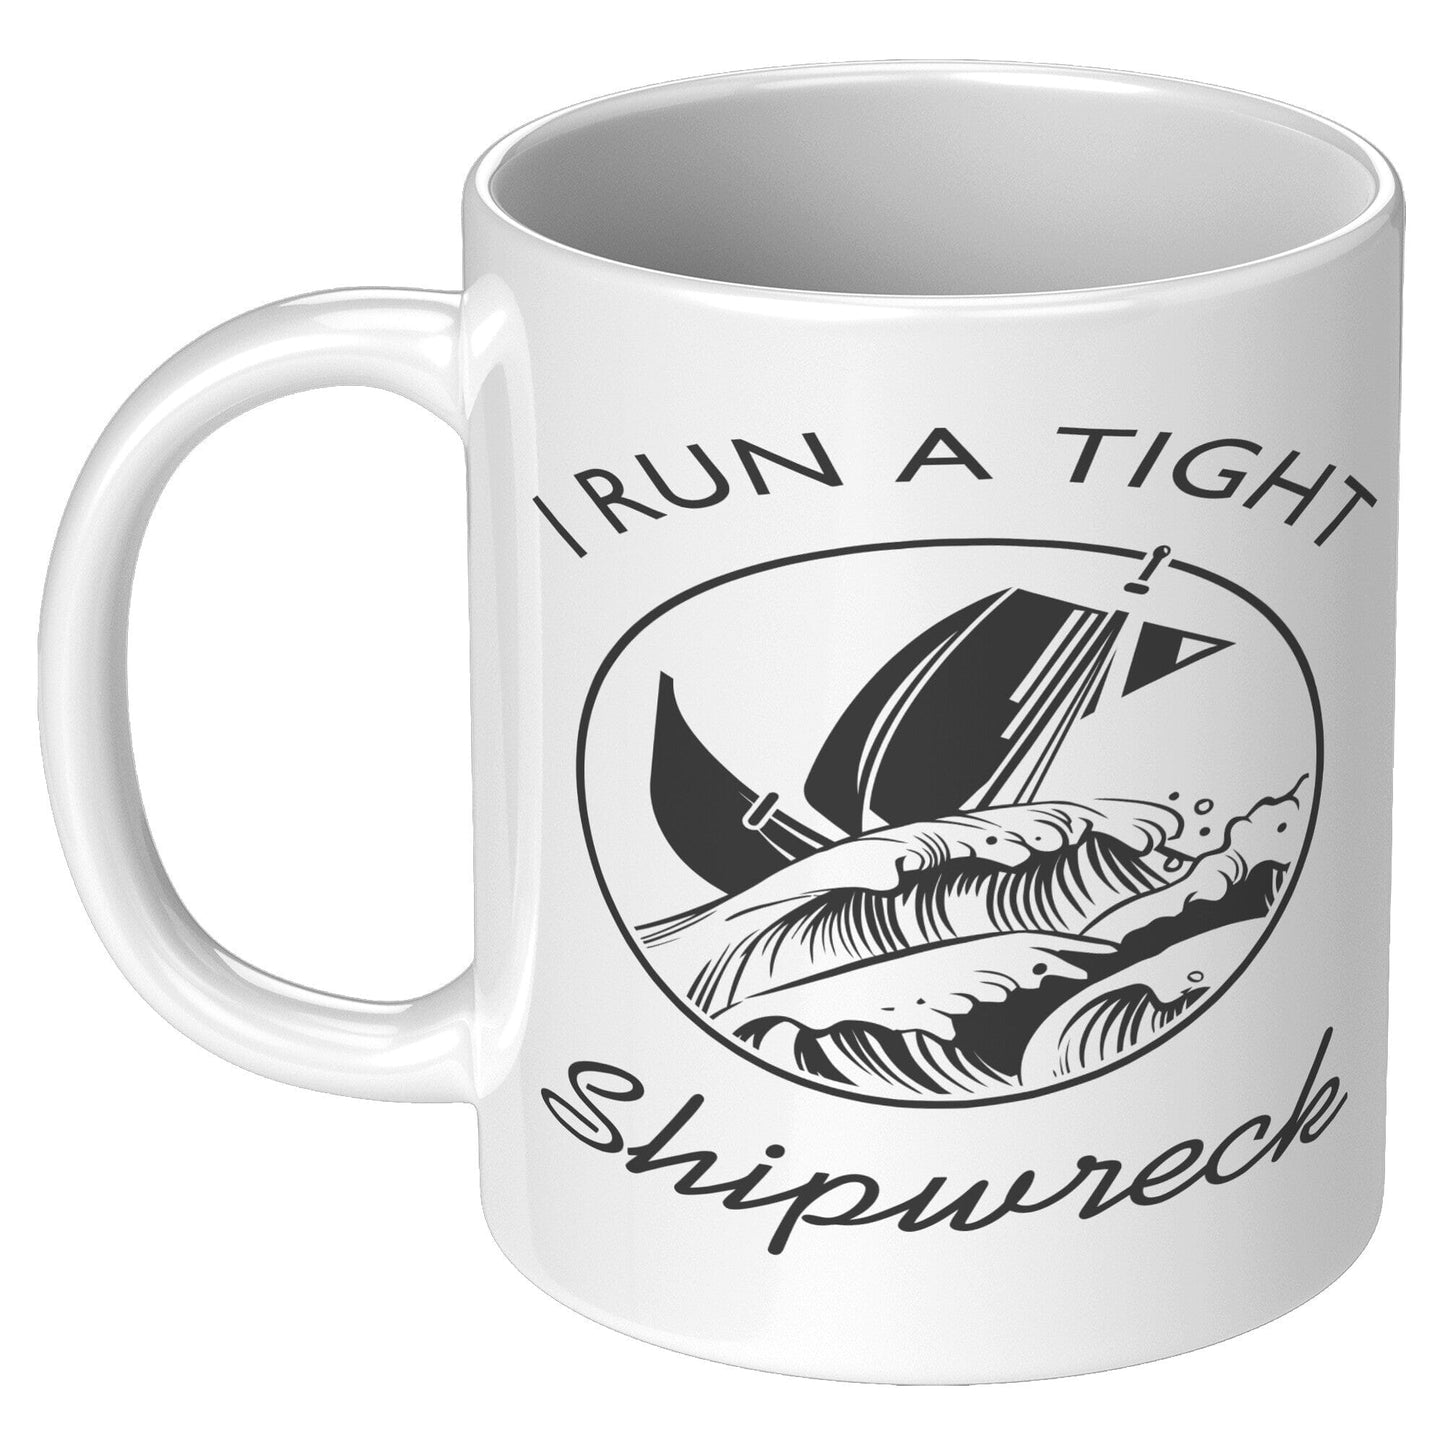 Tight Shipwreck - Coffee Mug